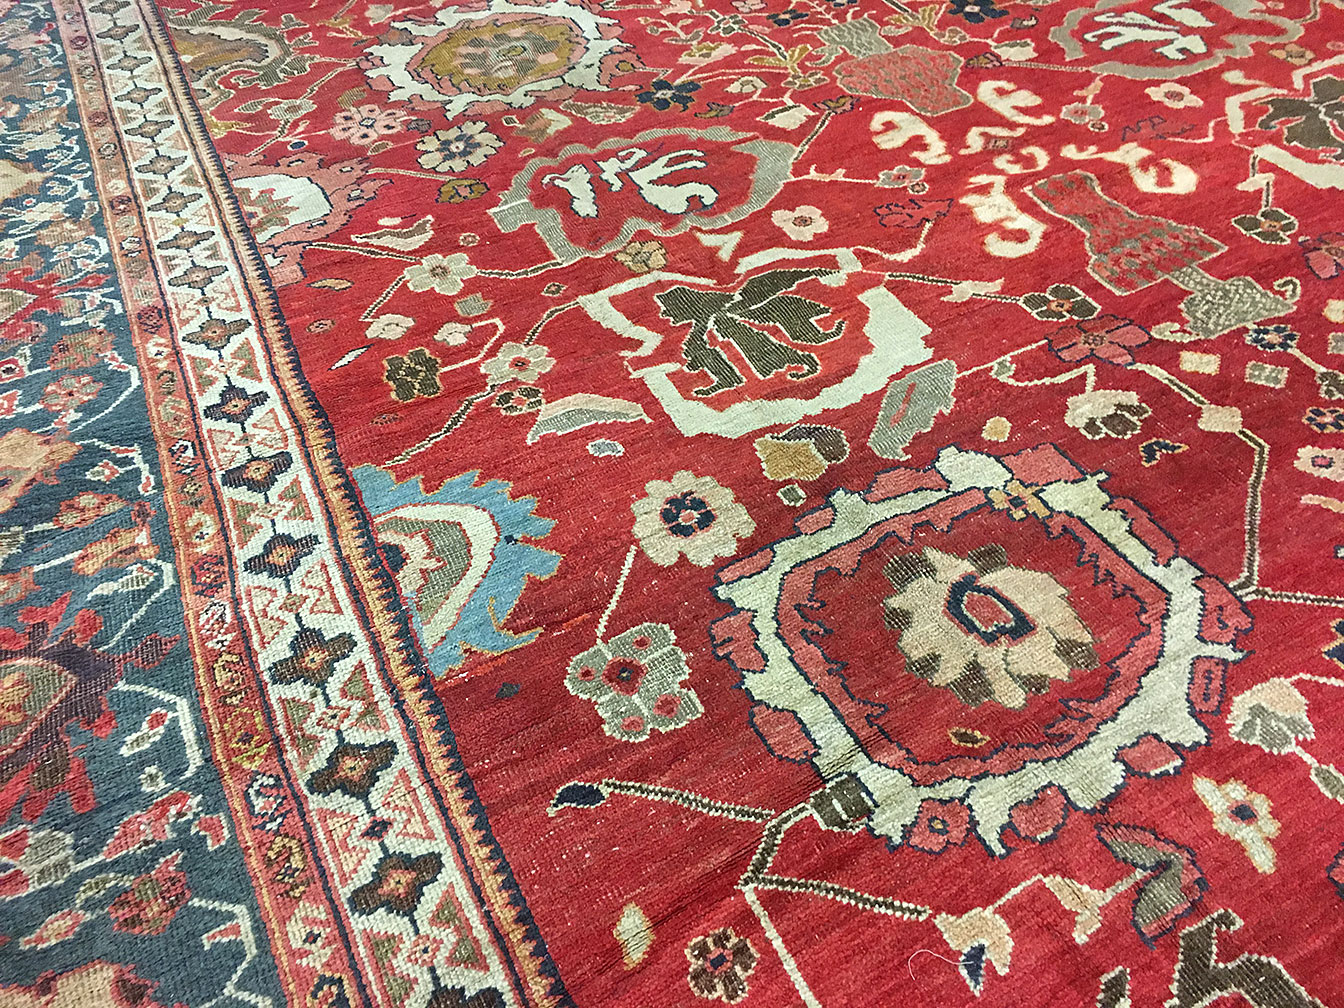 Antique sultan abad Carpet - # 53031